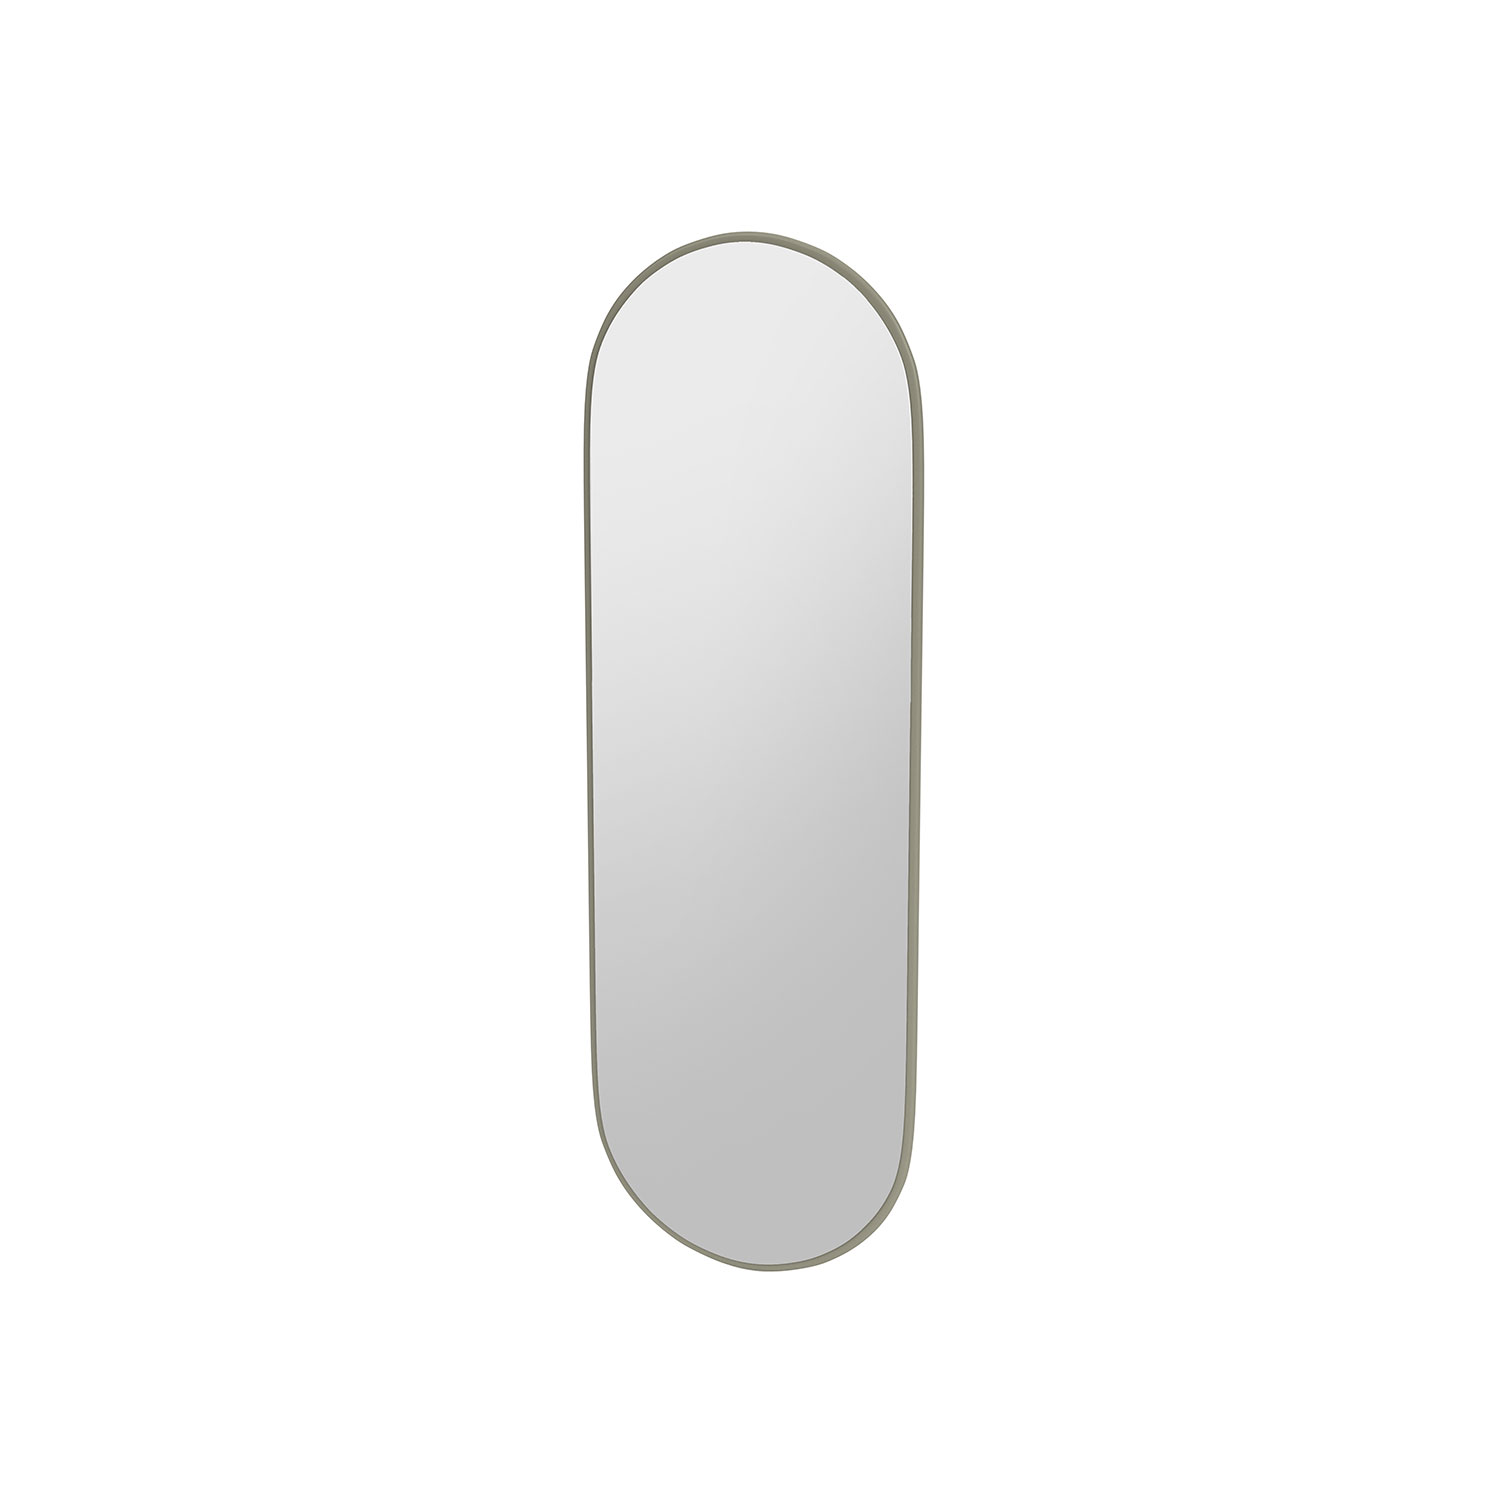 FIGURE oval mirror, Fennel